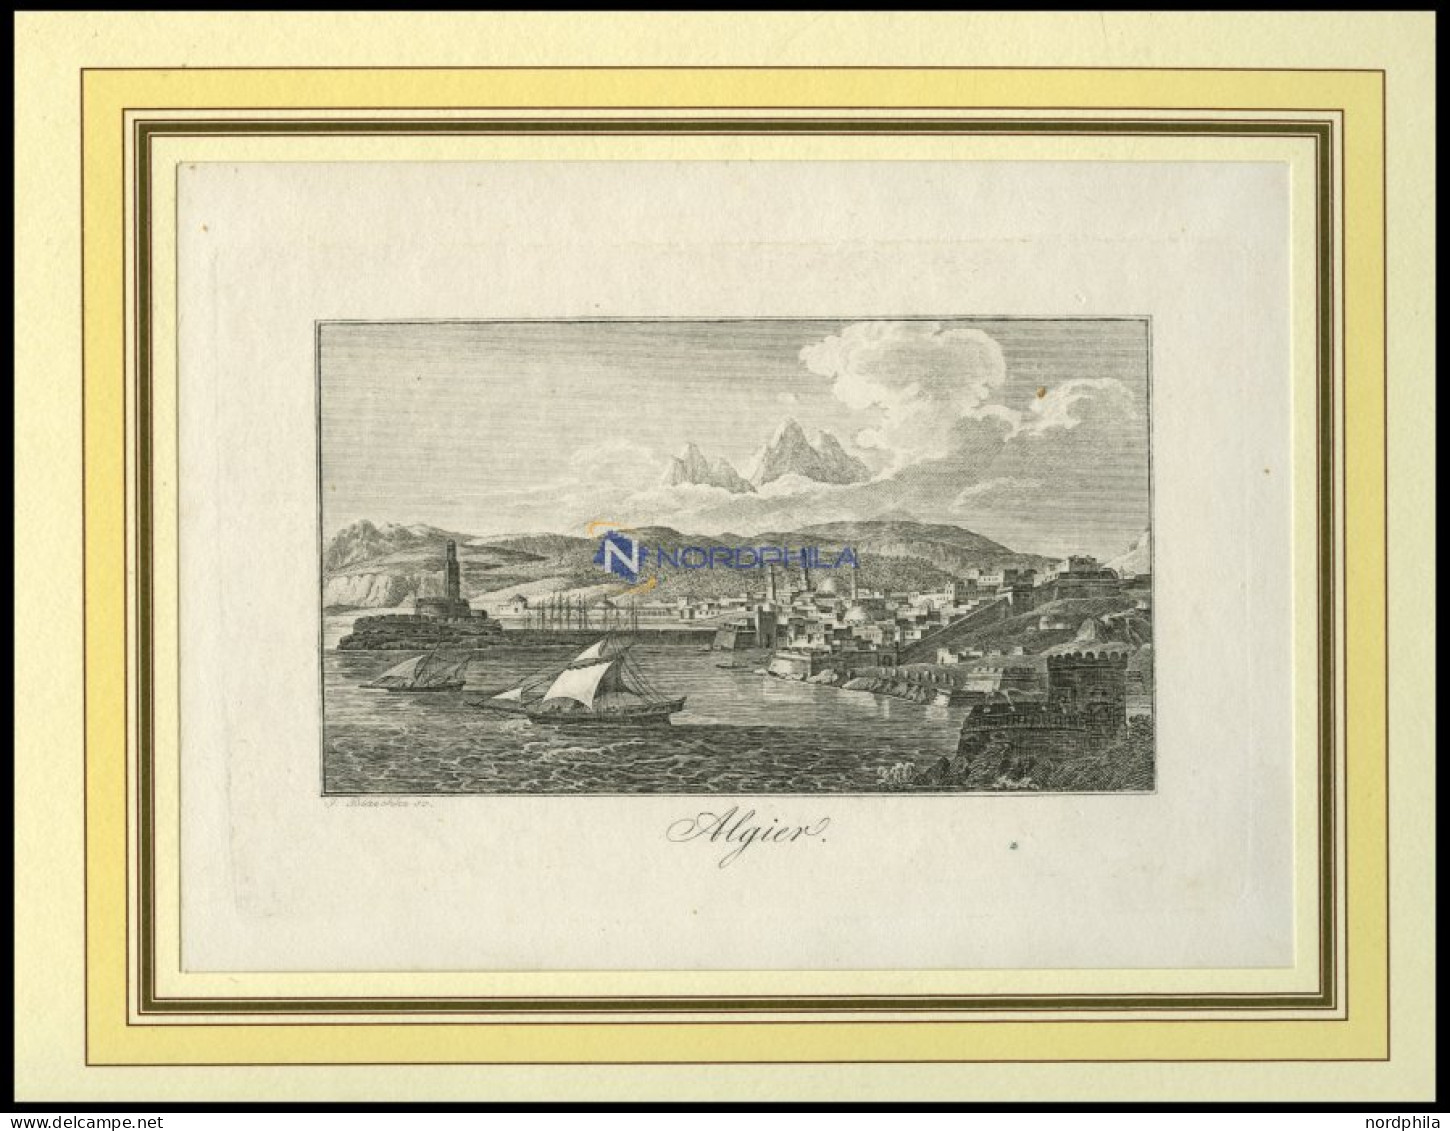 ALGERIEN: Algier, Gesamtansicht, Kupferstich Von Blaschke Um 1830 - Lithographies